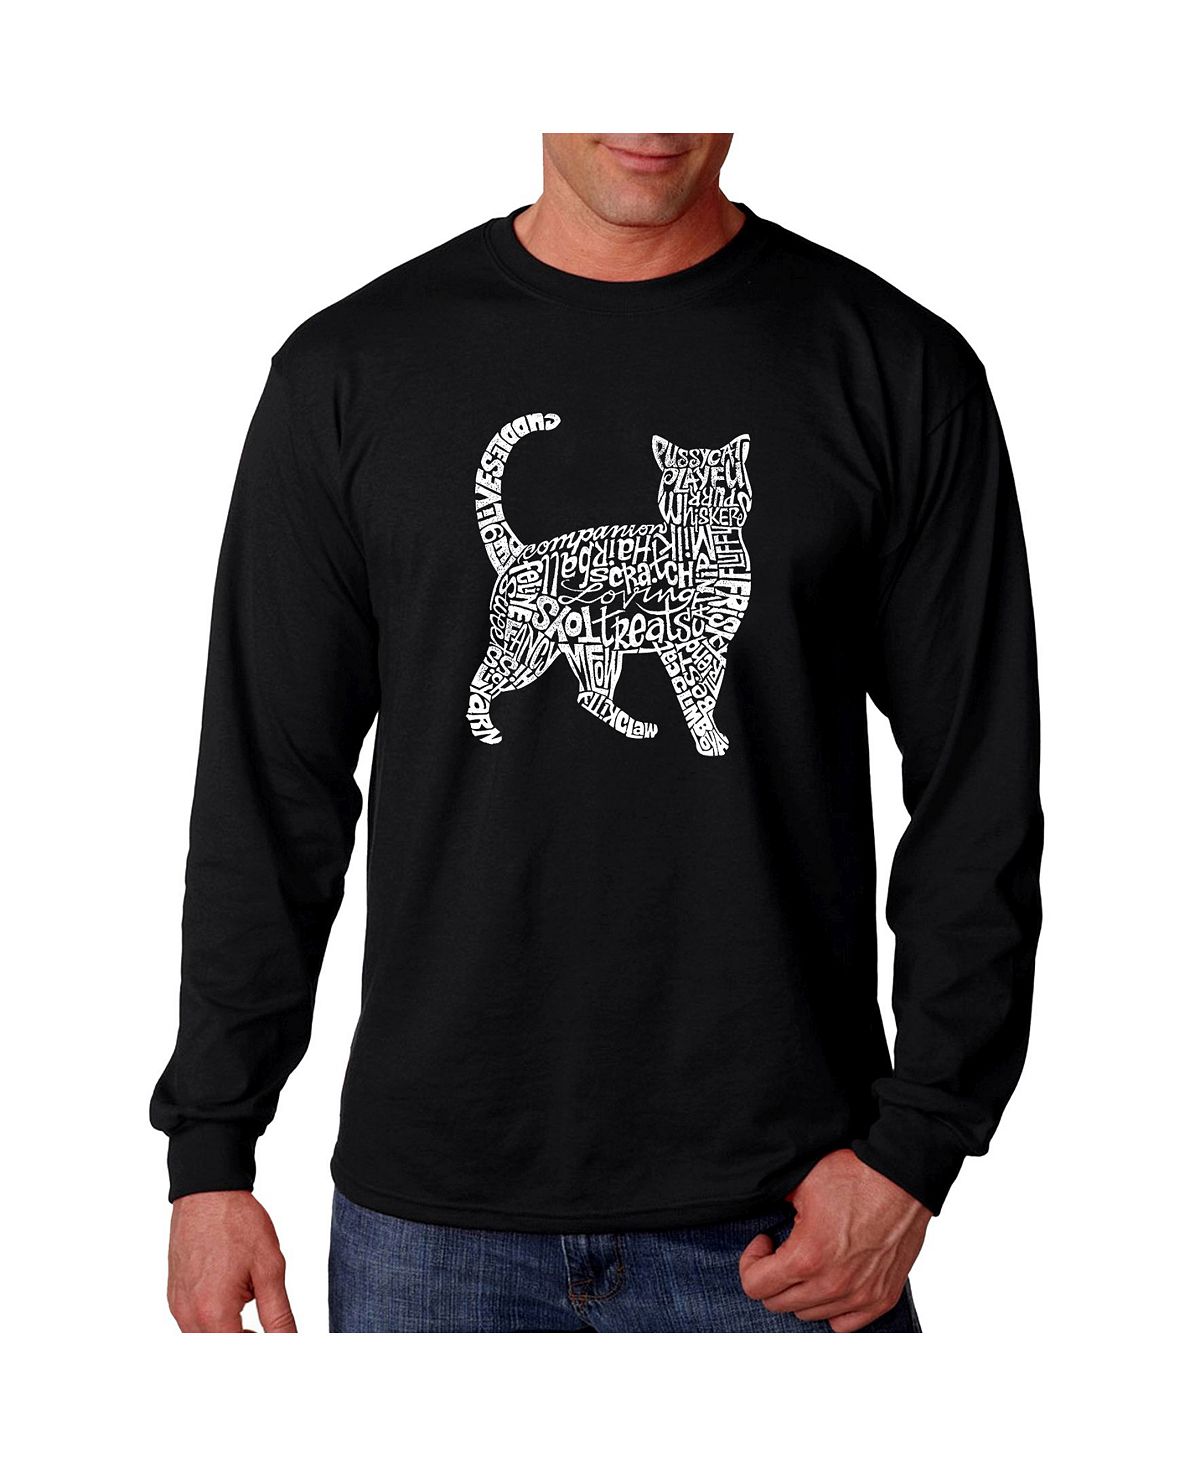 Мужская футболка с длинным рукавом word art - кошка LA Pop Art, черный мужская футболка word art с длинным рукавом t rex head la pop art черный